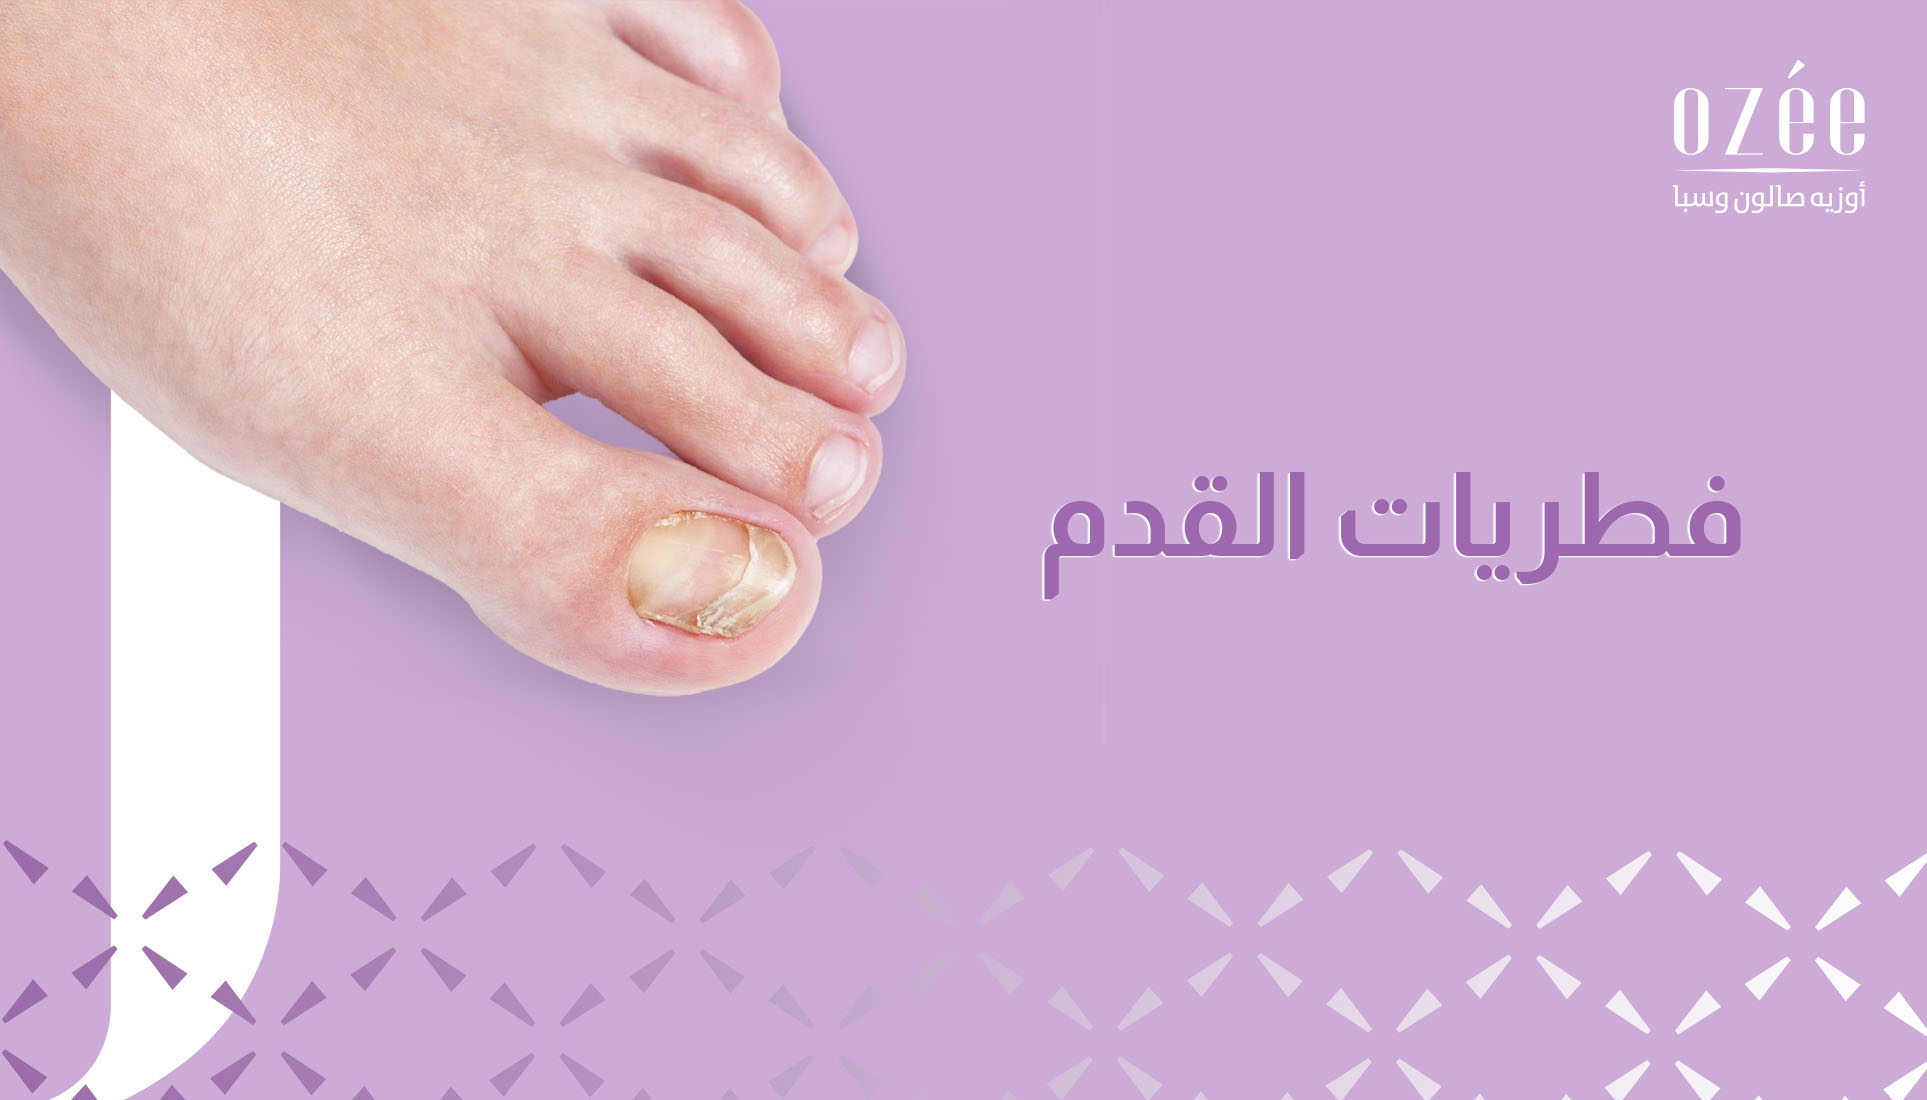 دليل شامل للتخلص من فطريات أظافر القدم: الأسباب والأعراض وطرق العلاج